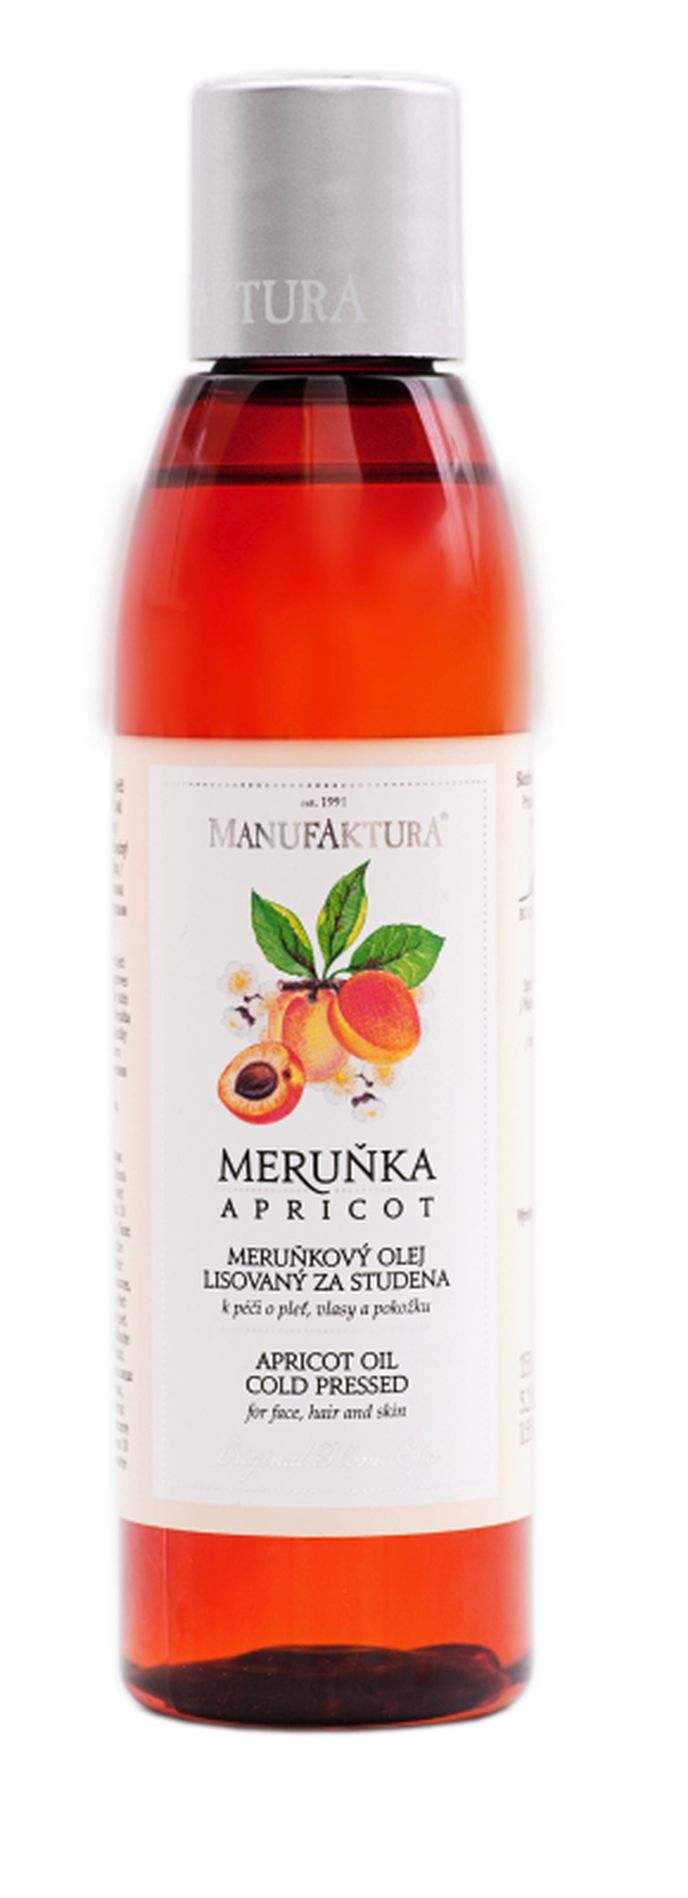 Meruňkový olej lisovaný za studena k péči o pleť, vlasy a pokožku, Manufakura, 395 Kč